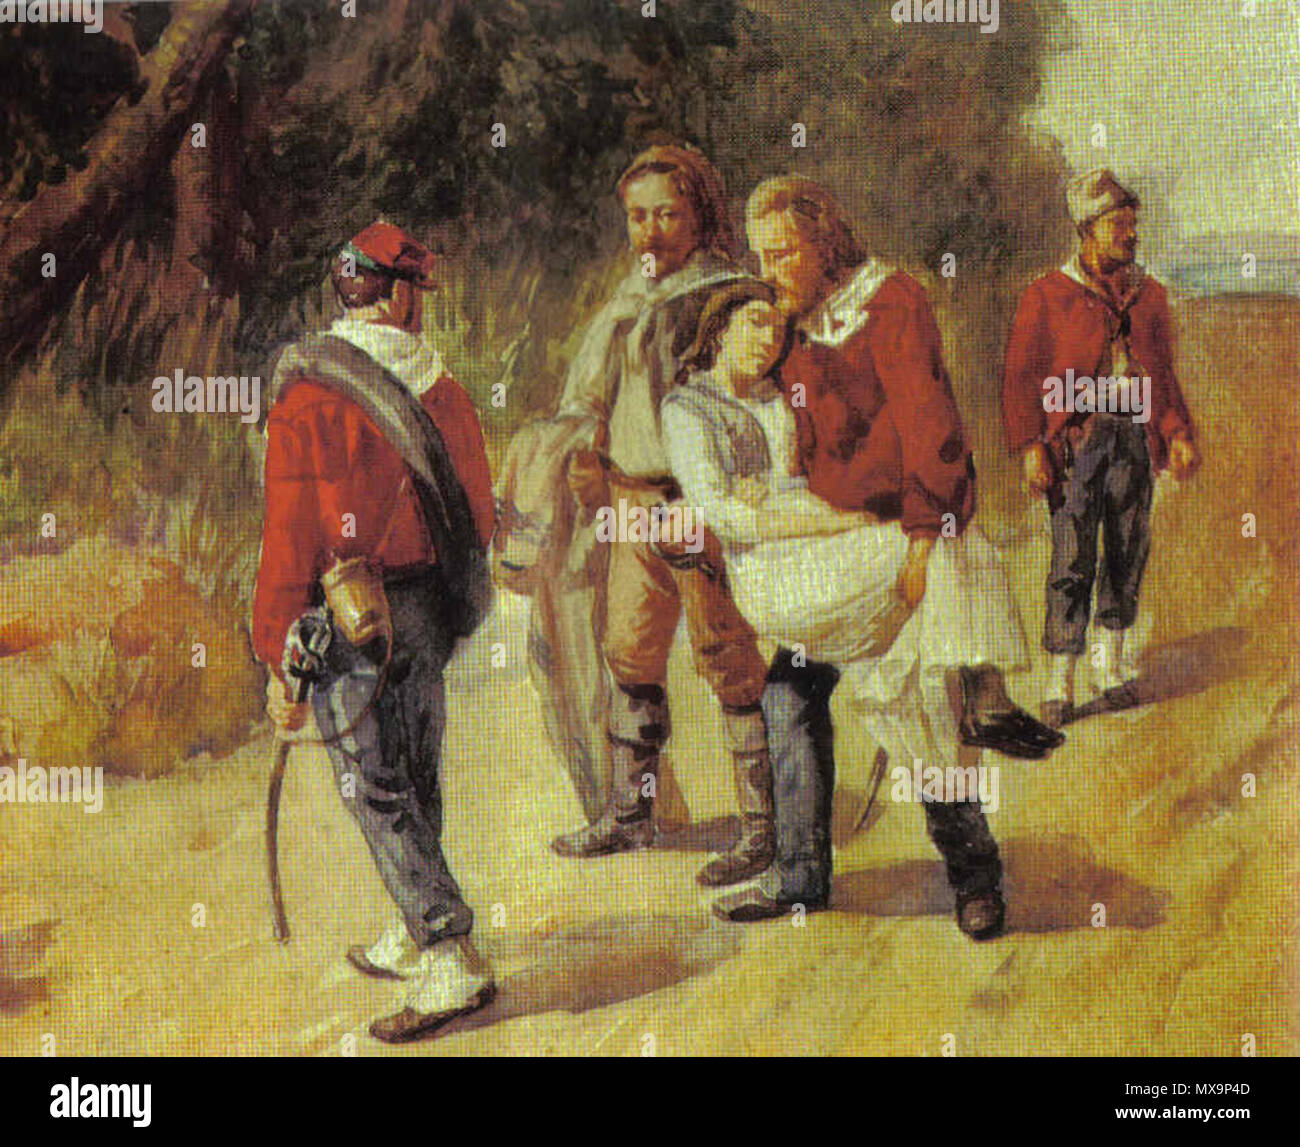 . Italienische Revolutionär Giuseppe Garibaldi und seine sterbenden Begleiter Anita Garibaldi Flucht aus San Marino 1849 235 Garbaldieanita Stockfoto